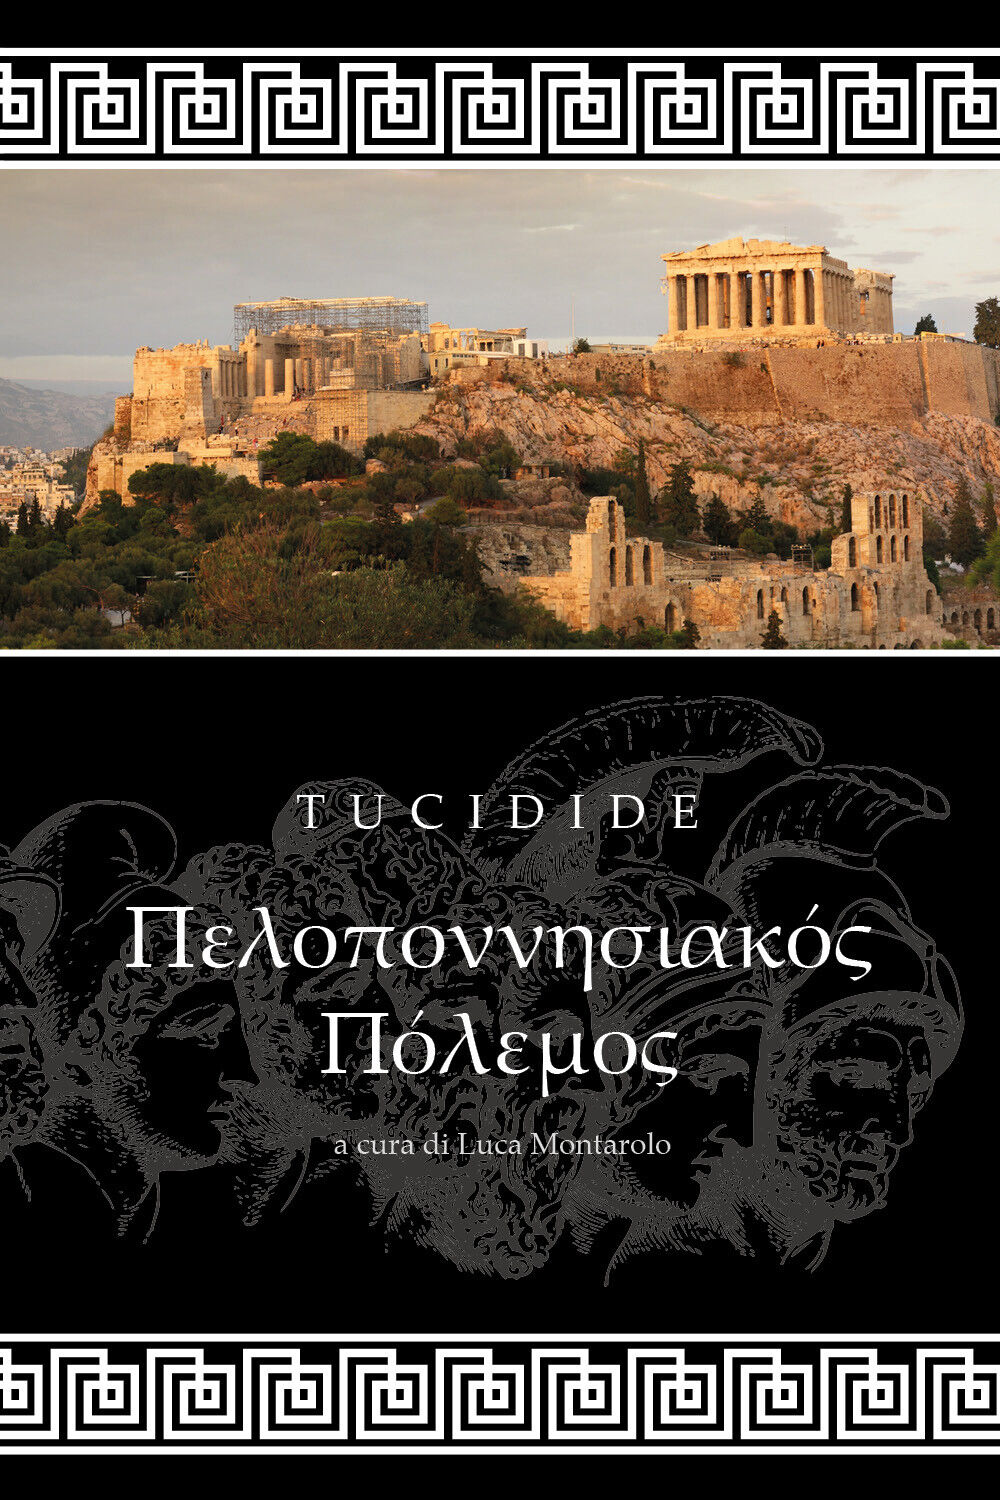 Guerra del Peloponneso,  di Tucidide, L. Montarolo,  2018